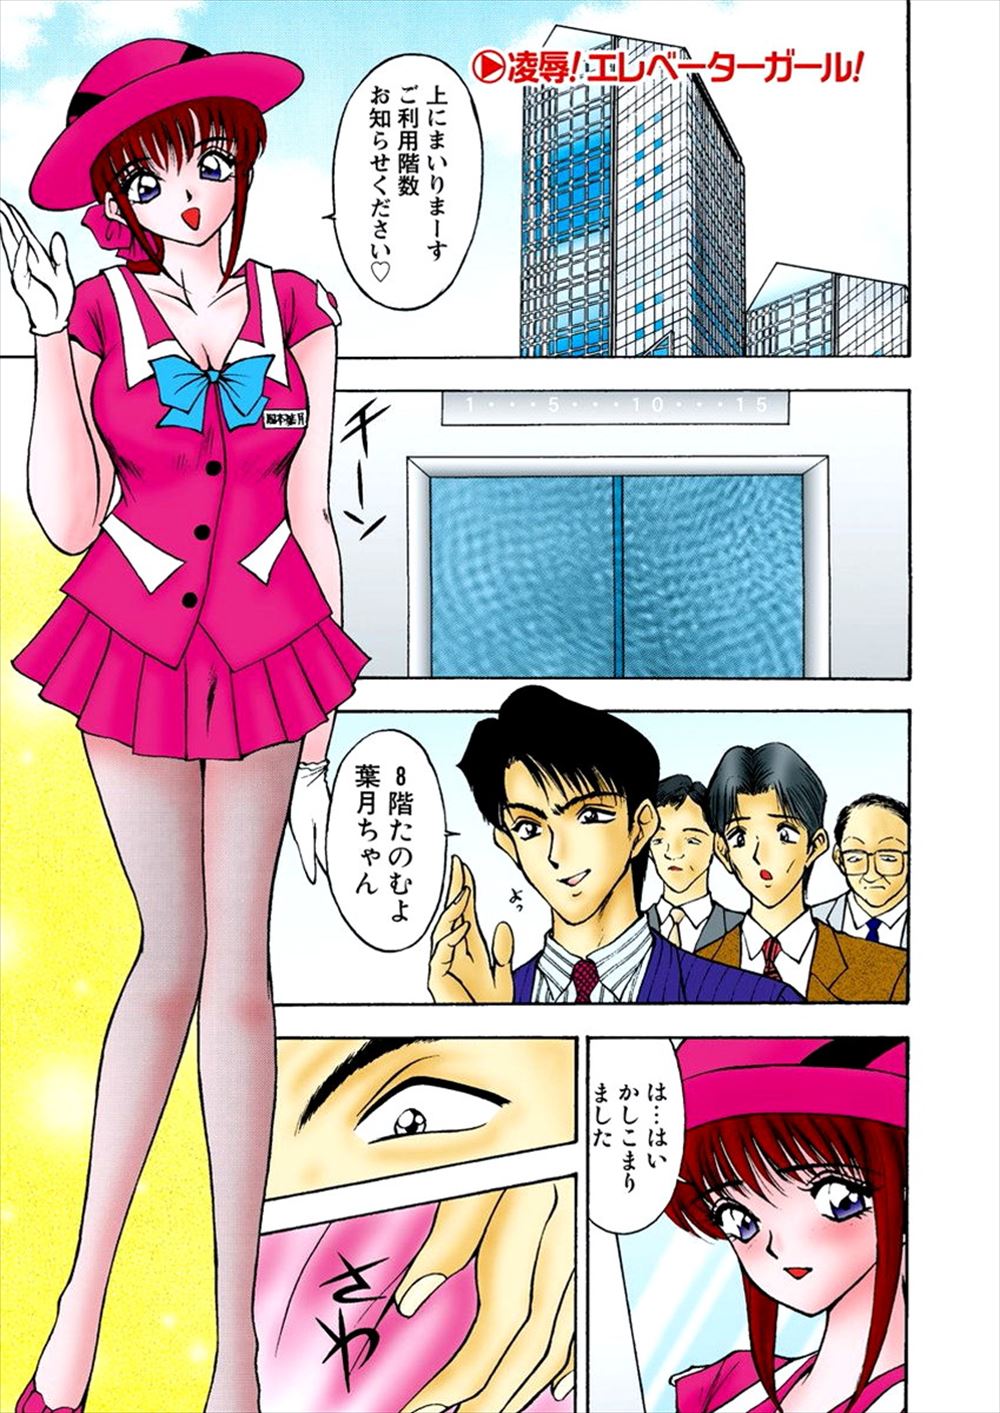 【エロ漫画】巨乳エレベーターガールはその会社の男性社員と付き合っていたエレベーター内でエッチなことをされちゃうｗｗ しかしその社員は彼女のことを騙していて金を巻き上げてどこかえ消えてしまう……